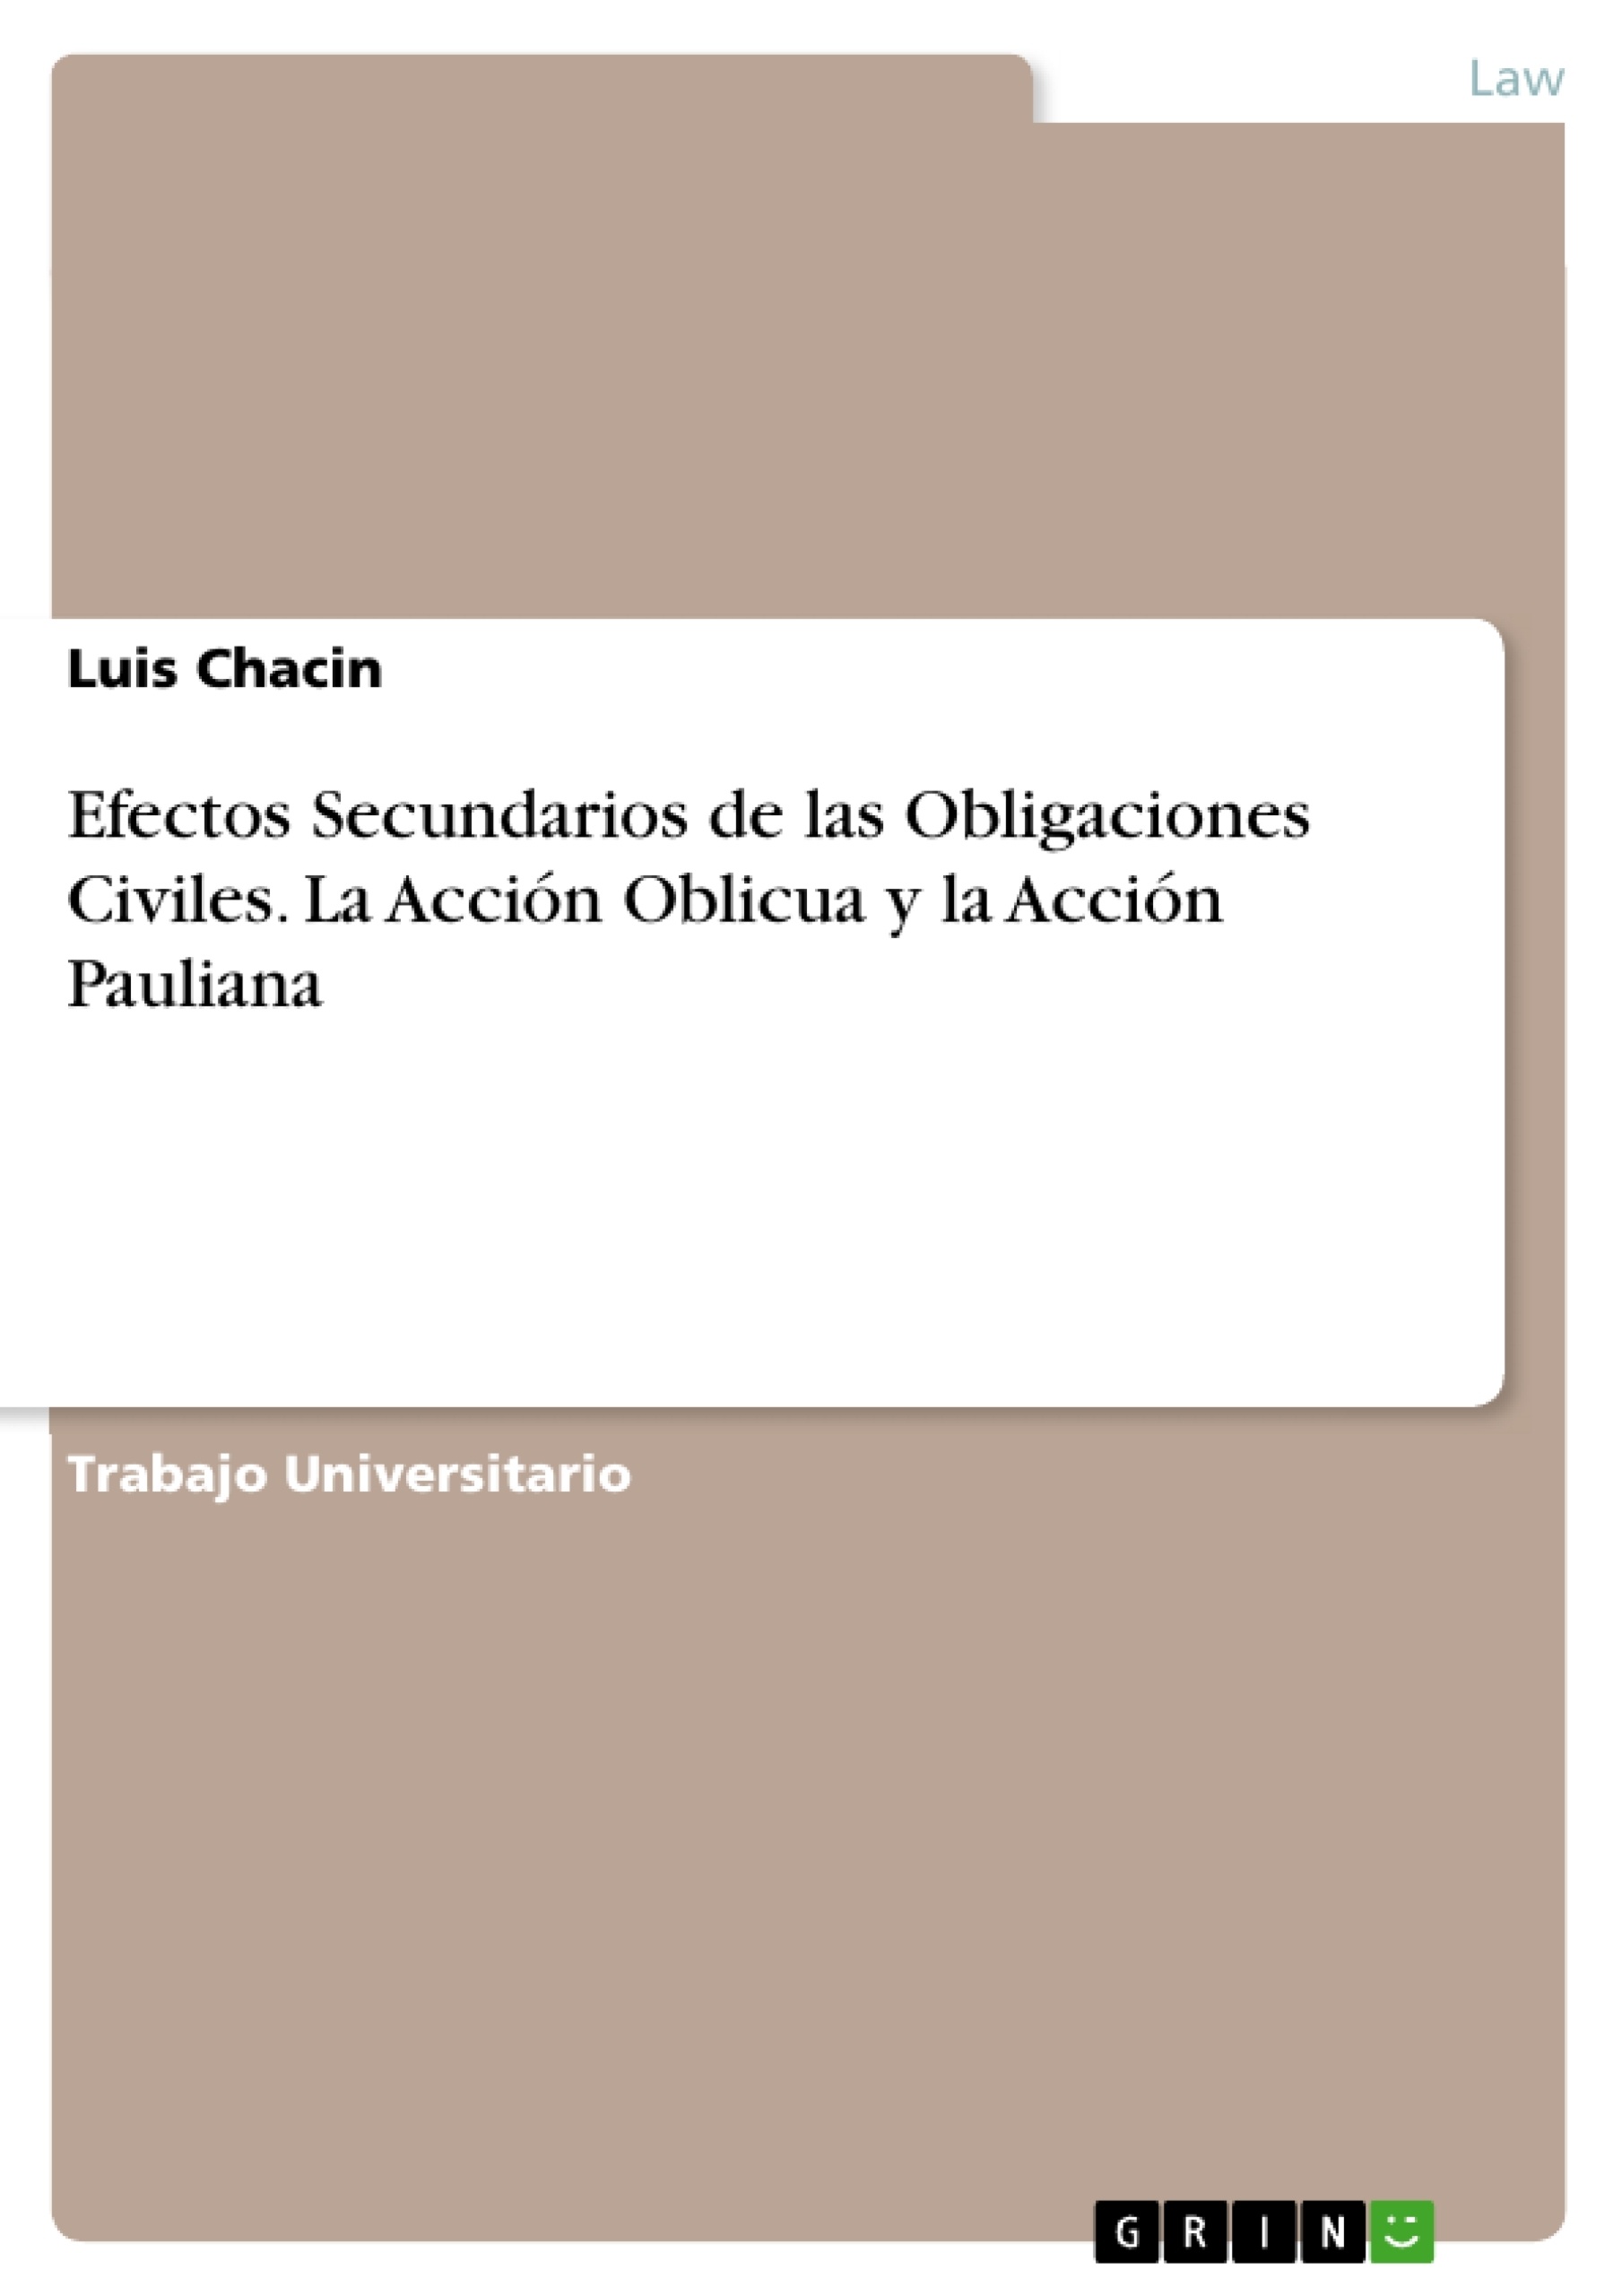 Title: Efectos Secundarios de las Obligaciones Civiles. La Acción Oblicua y la Acción Pauliana